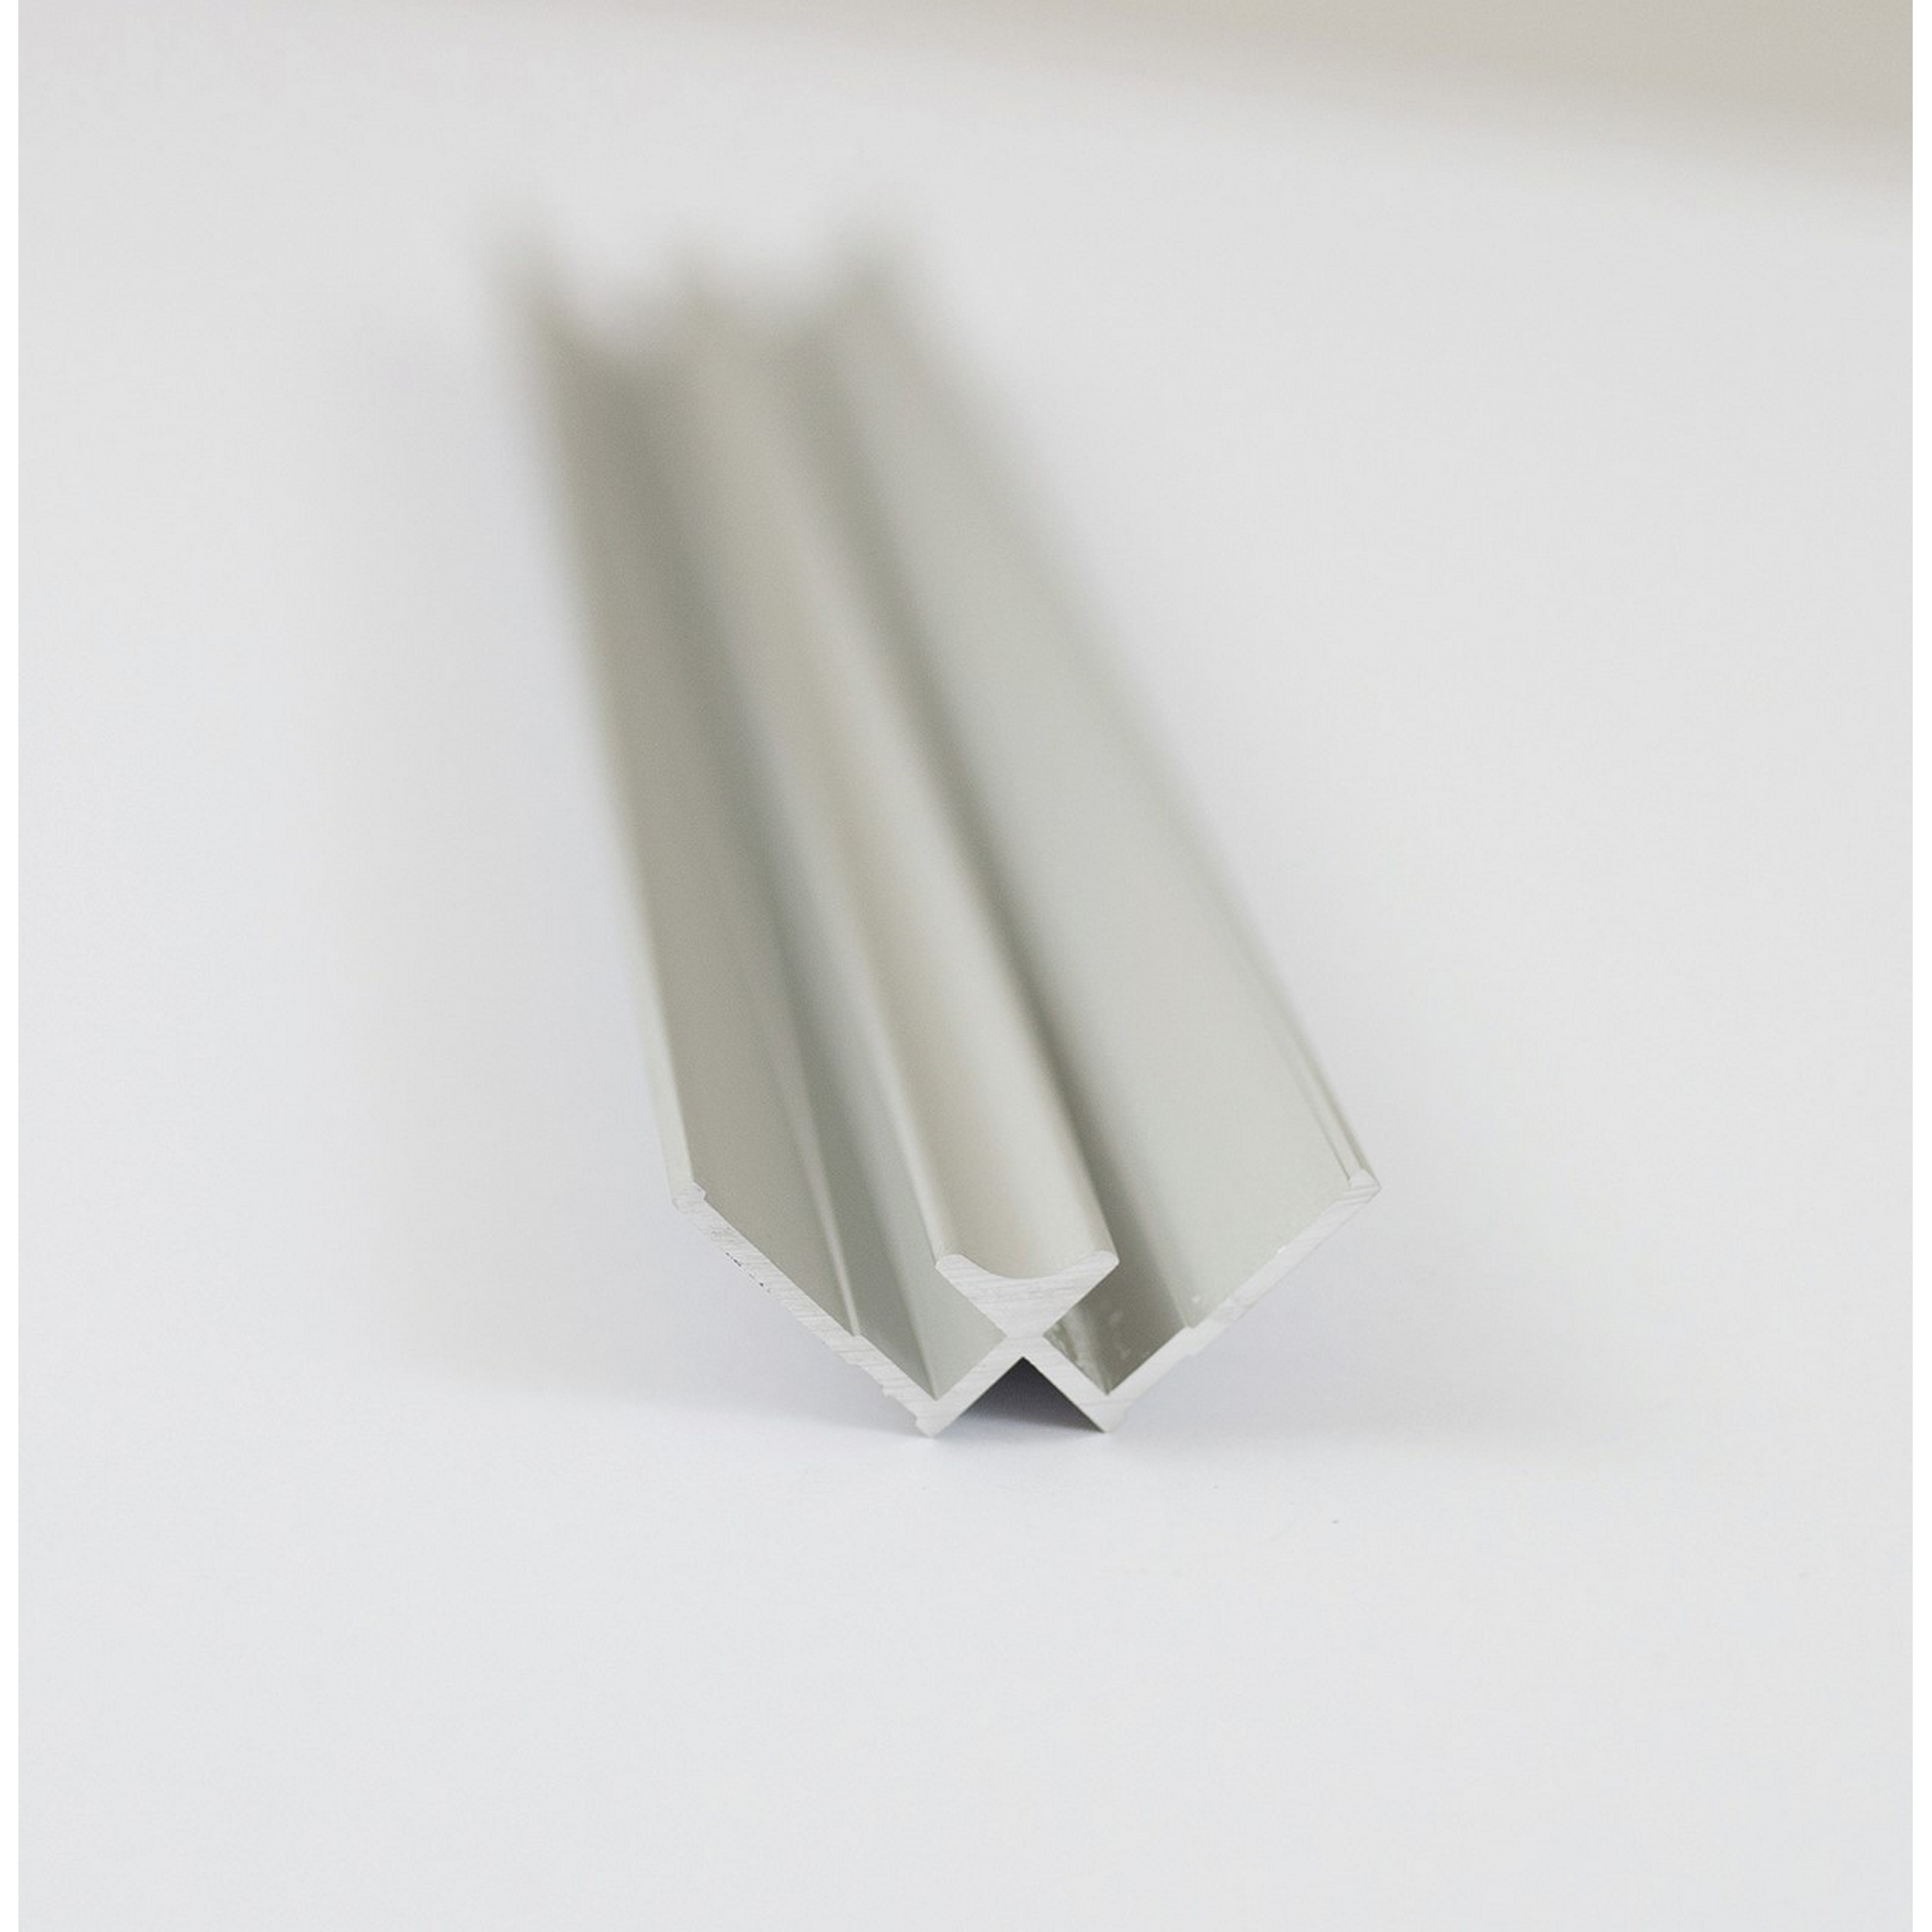 Eck-Verbindungsprofil für 'DecoDesign' Rückwand innen, alu-silber matt 2100 mm + product picture